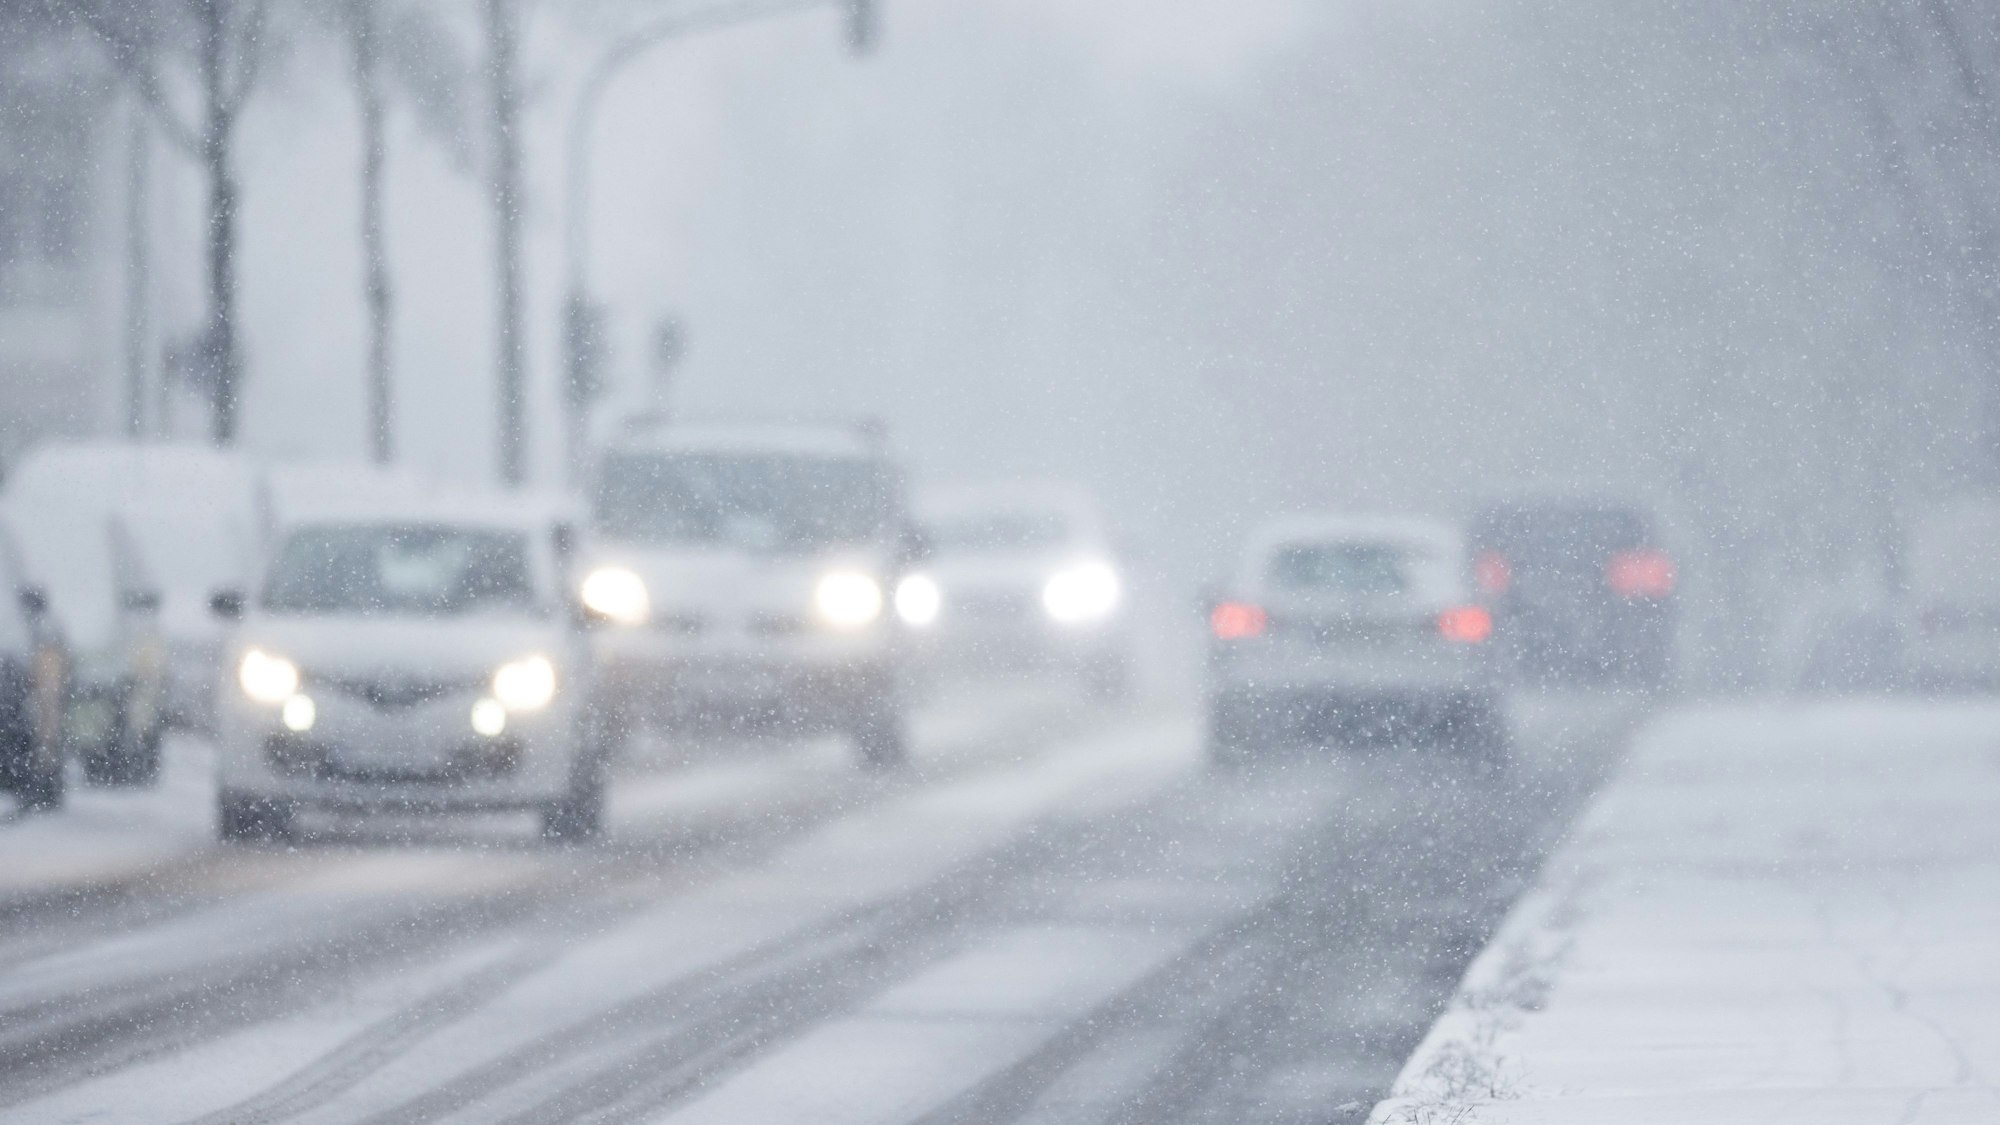 Nur langsam kommen Autos in der Kölner Innenstadt im dichten Schneetreiben voran.